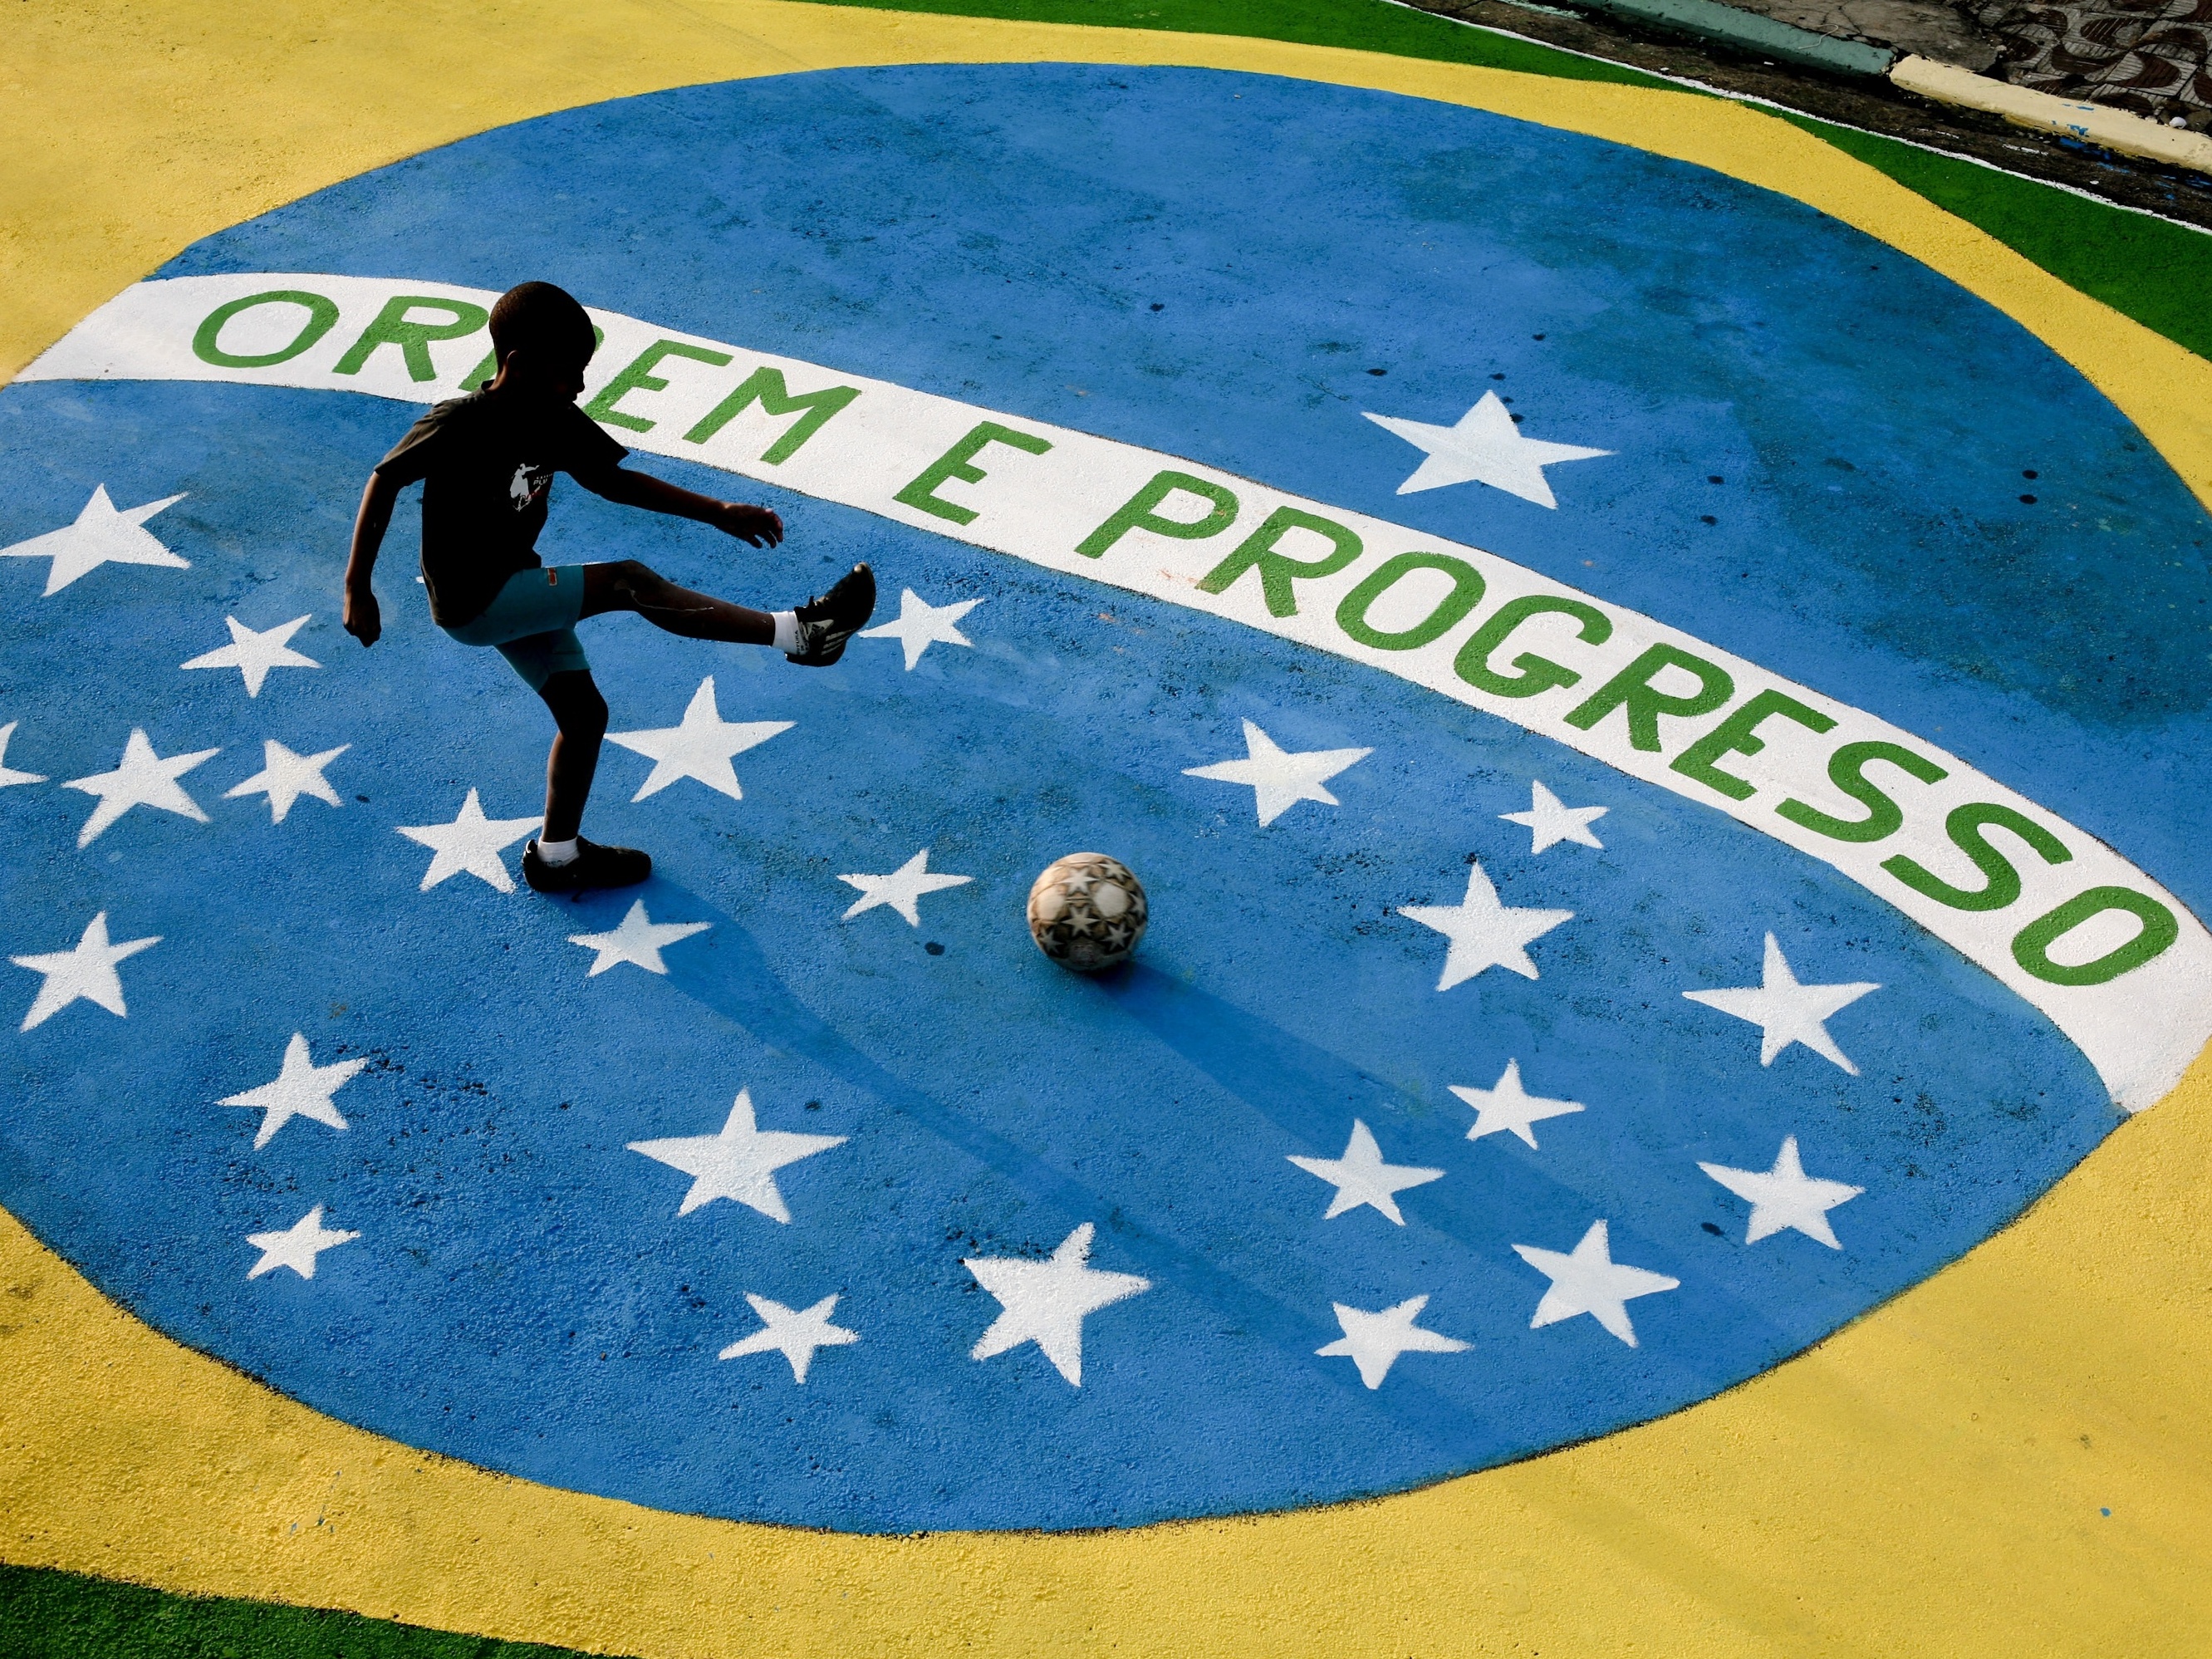 Especial Copa do Mundo FIFA 2010 – Informações, calendário